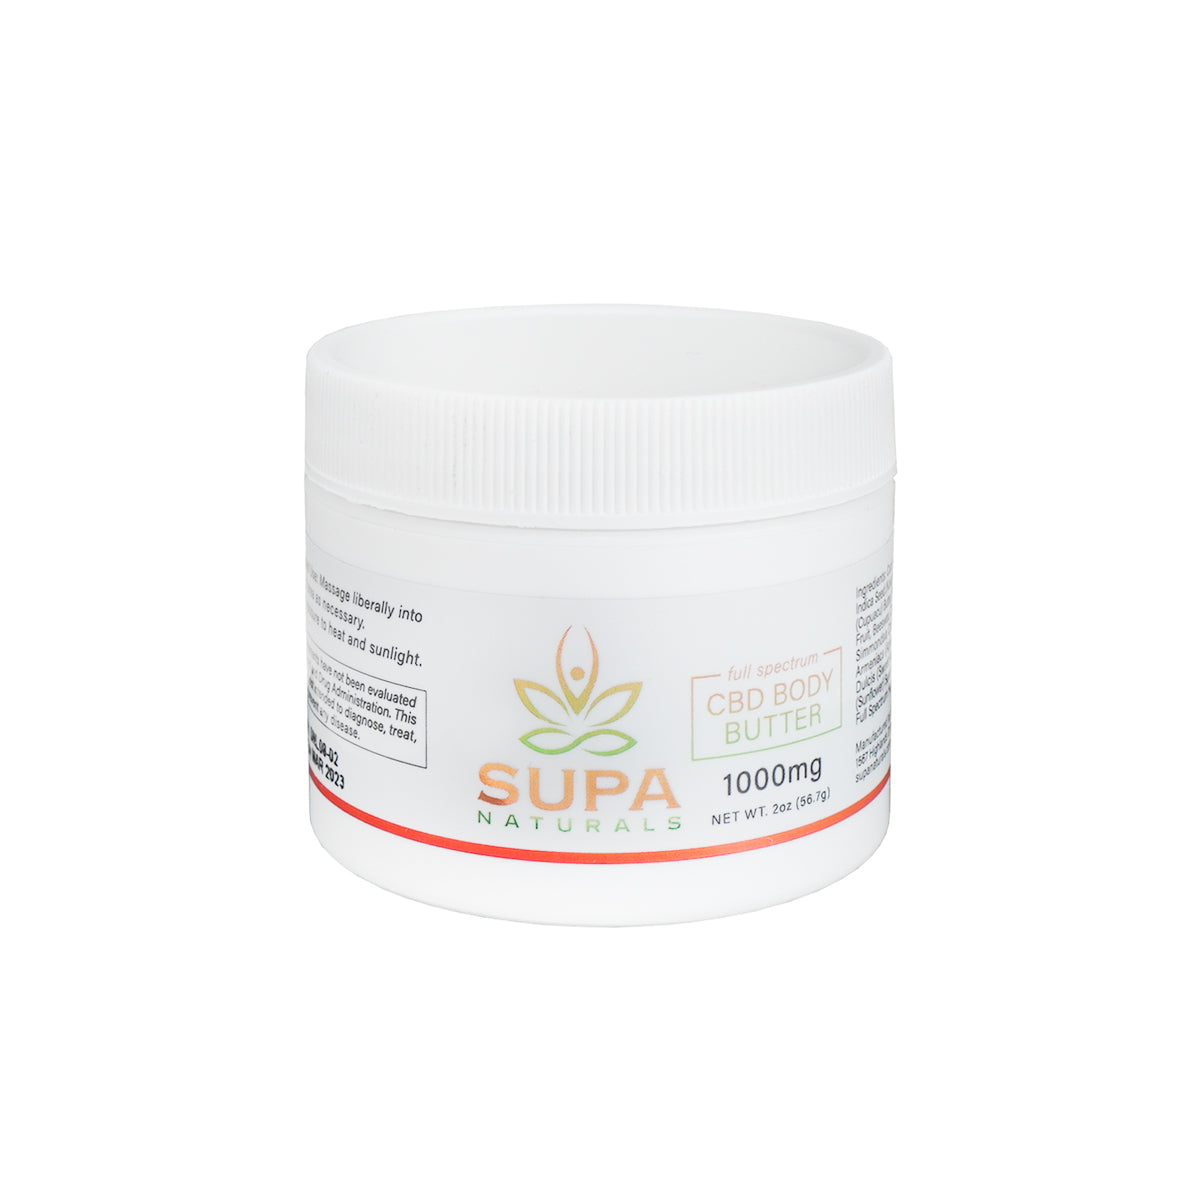 Full Spectrum CBD Body Butter (1000mg) | SUPA Naturals